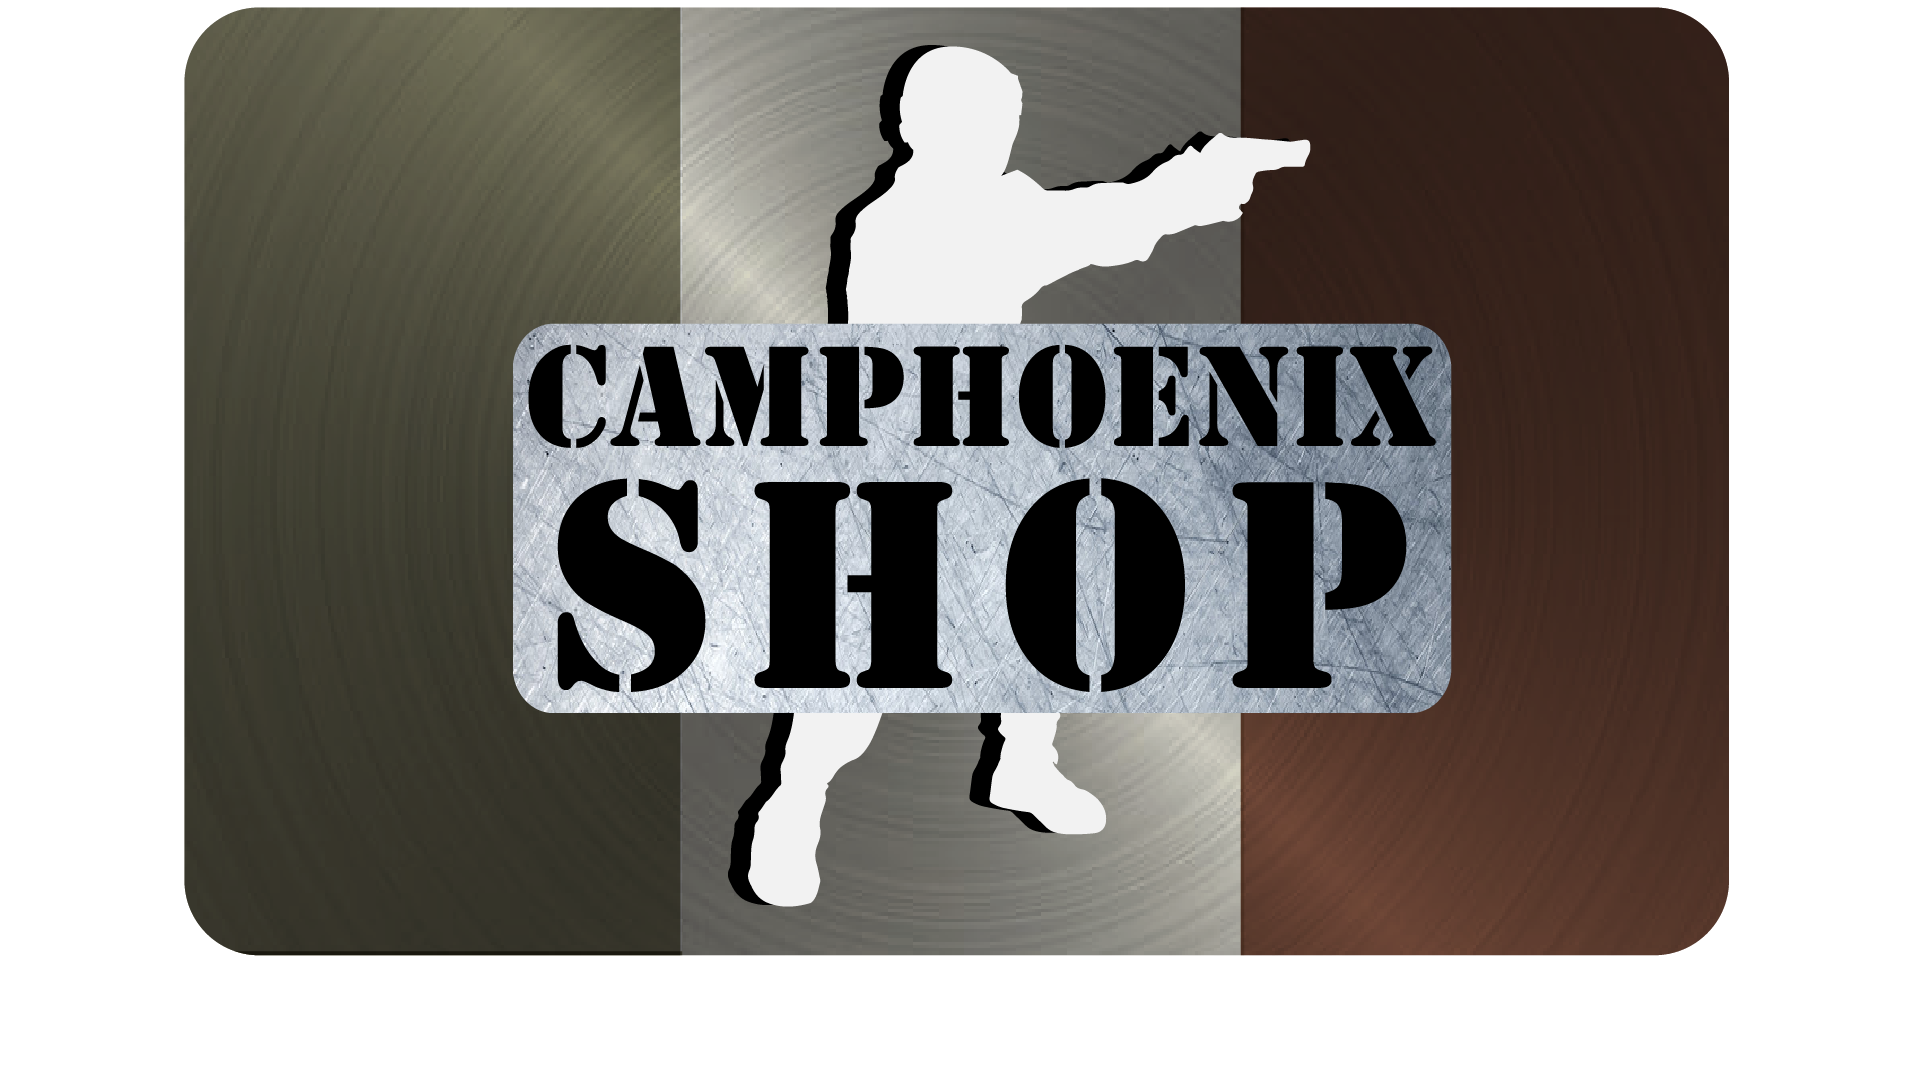 Camphoenix Softair Shop - Paradise S.r.l.